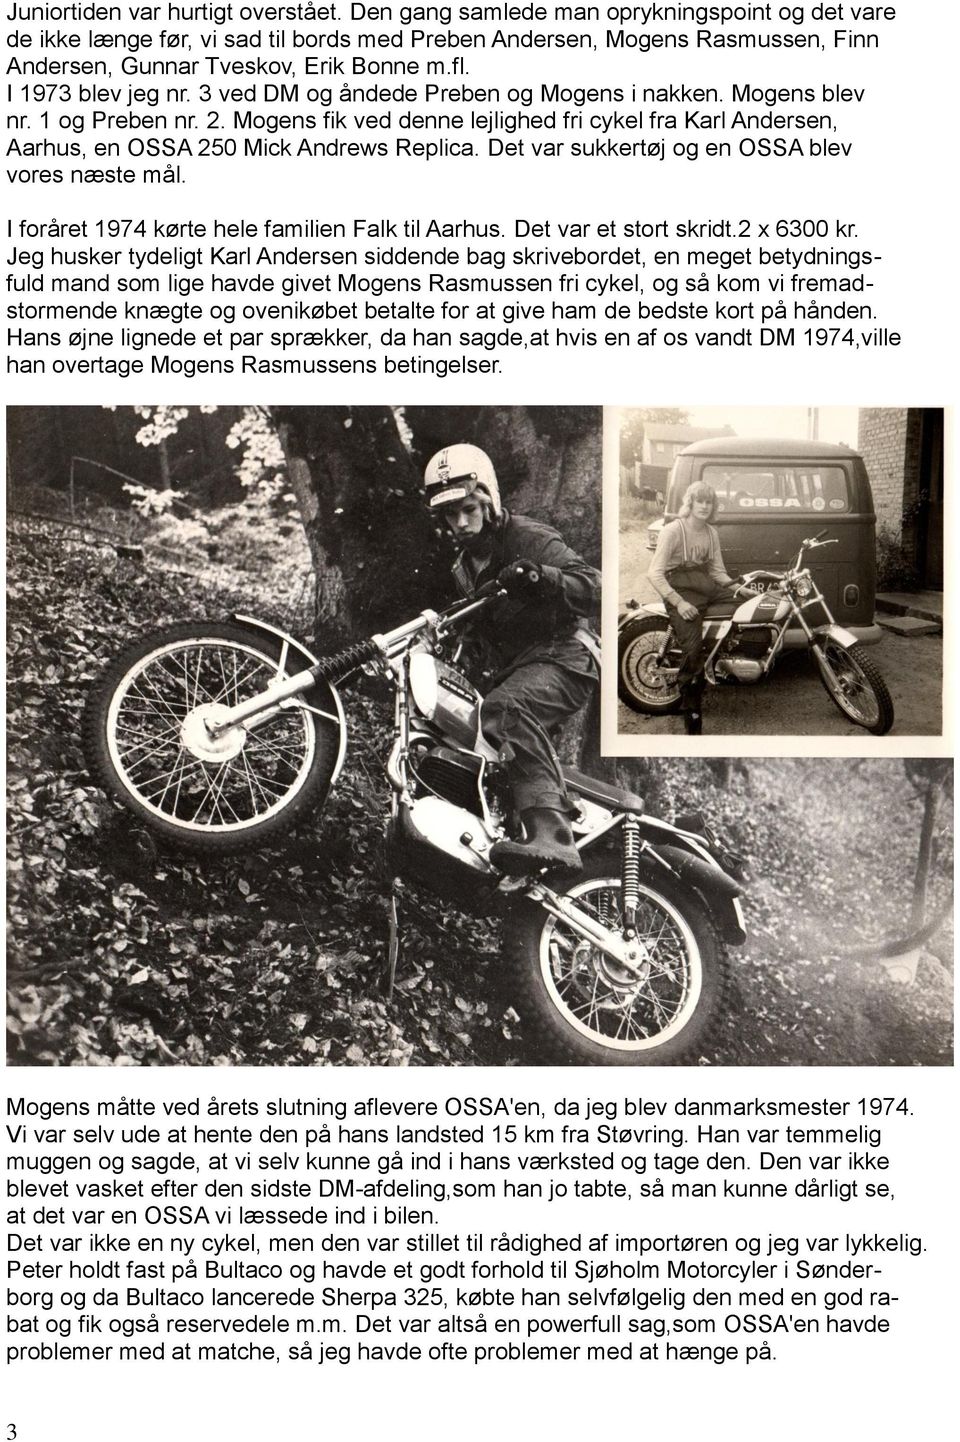 3 ved DM og åndede Preben og Mogens i nakken. Mogens blev nr. 1 og Preben nr. 2. Mogens fik ved denne lejlighed fri cykel fra Karl Andersen, Aarhus, en OSSA 250 Mick Andrews Replica.